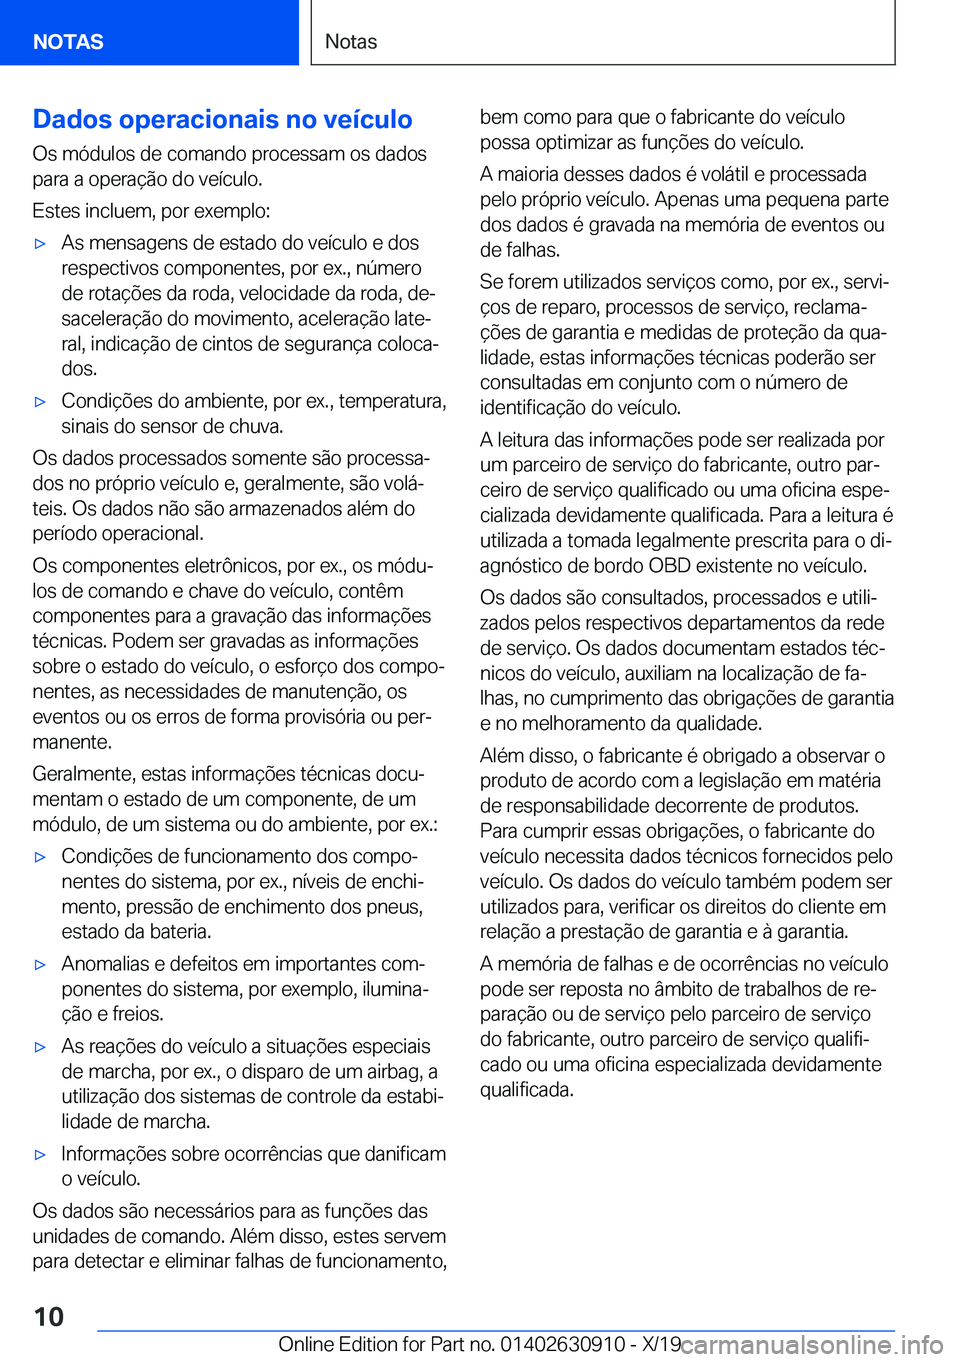 BMW X2 2020  Manual do condutor (in Portuguese) �D�a�d�o�s��o�p�e�r�a�c�i�o�n�a�i�s��n�o��v�e�